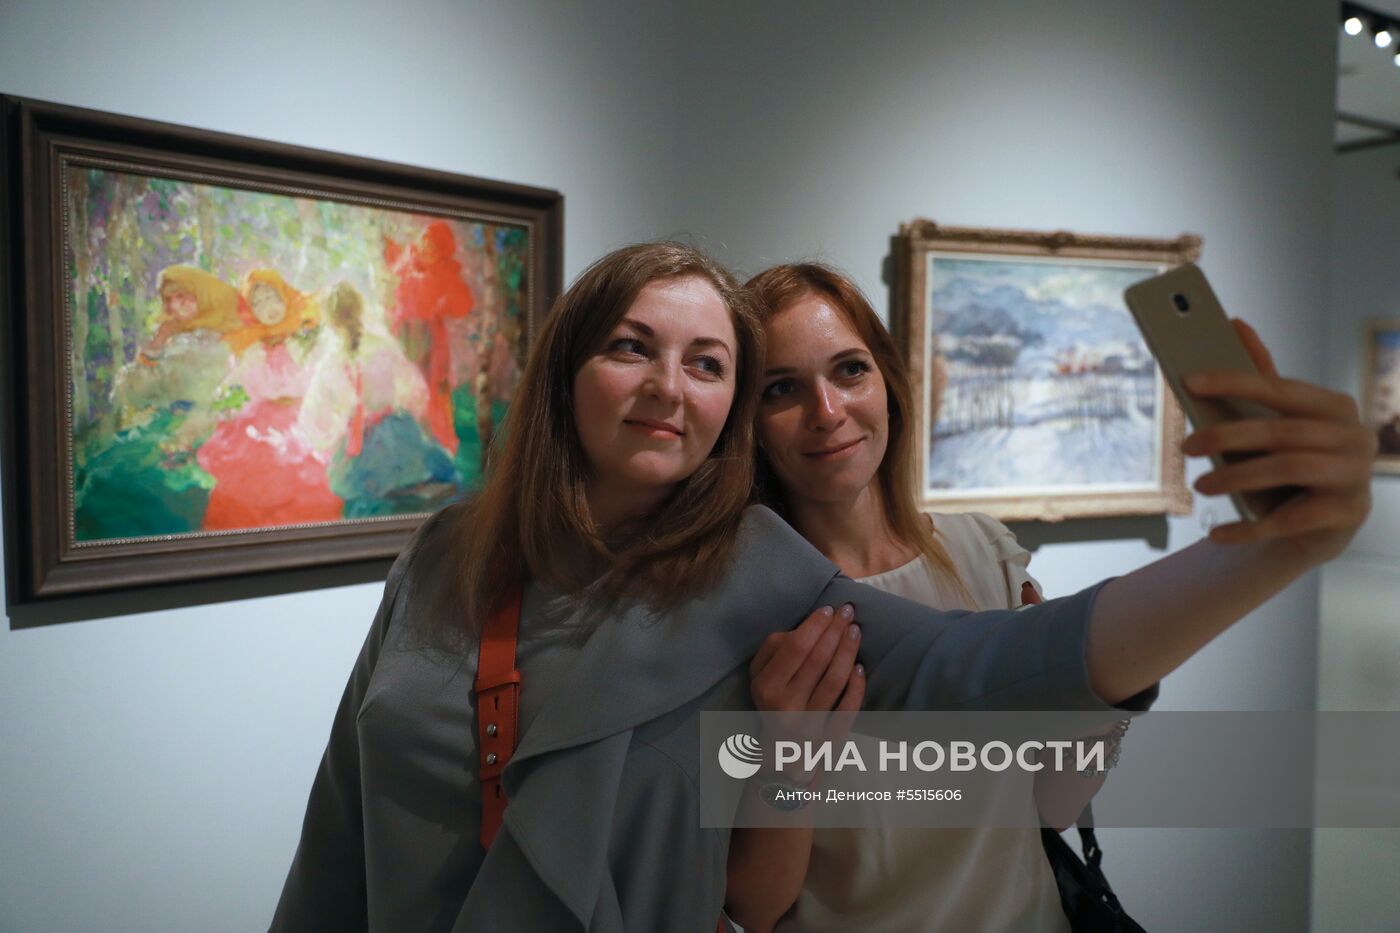 Открытие выставки "Импрессионизм в авангарде" в Музее русского импрессионизма